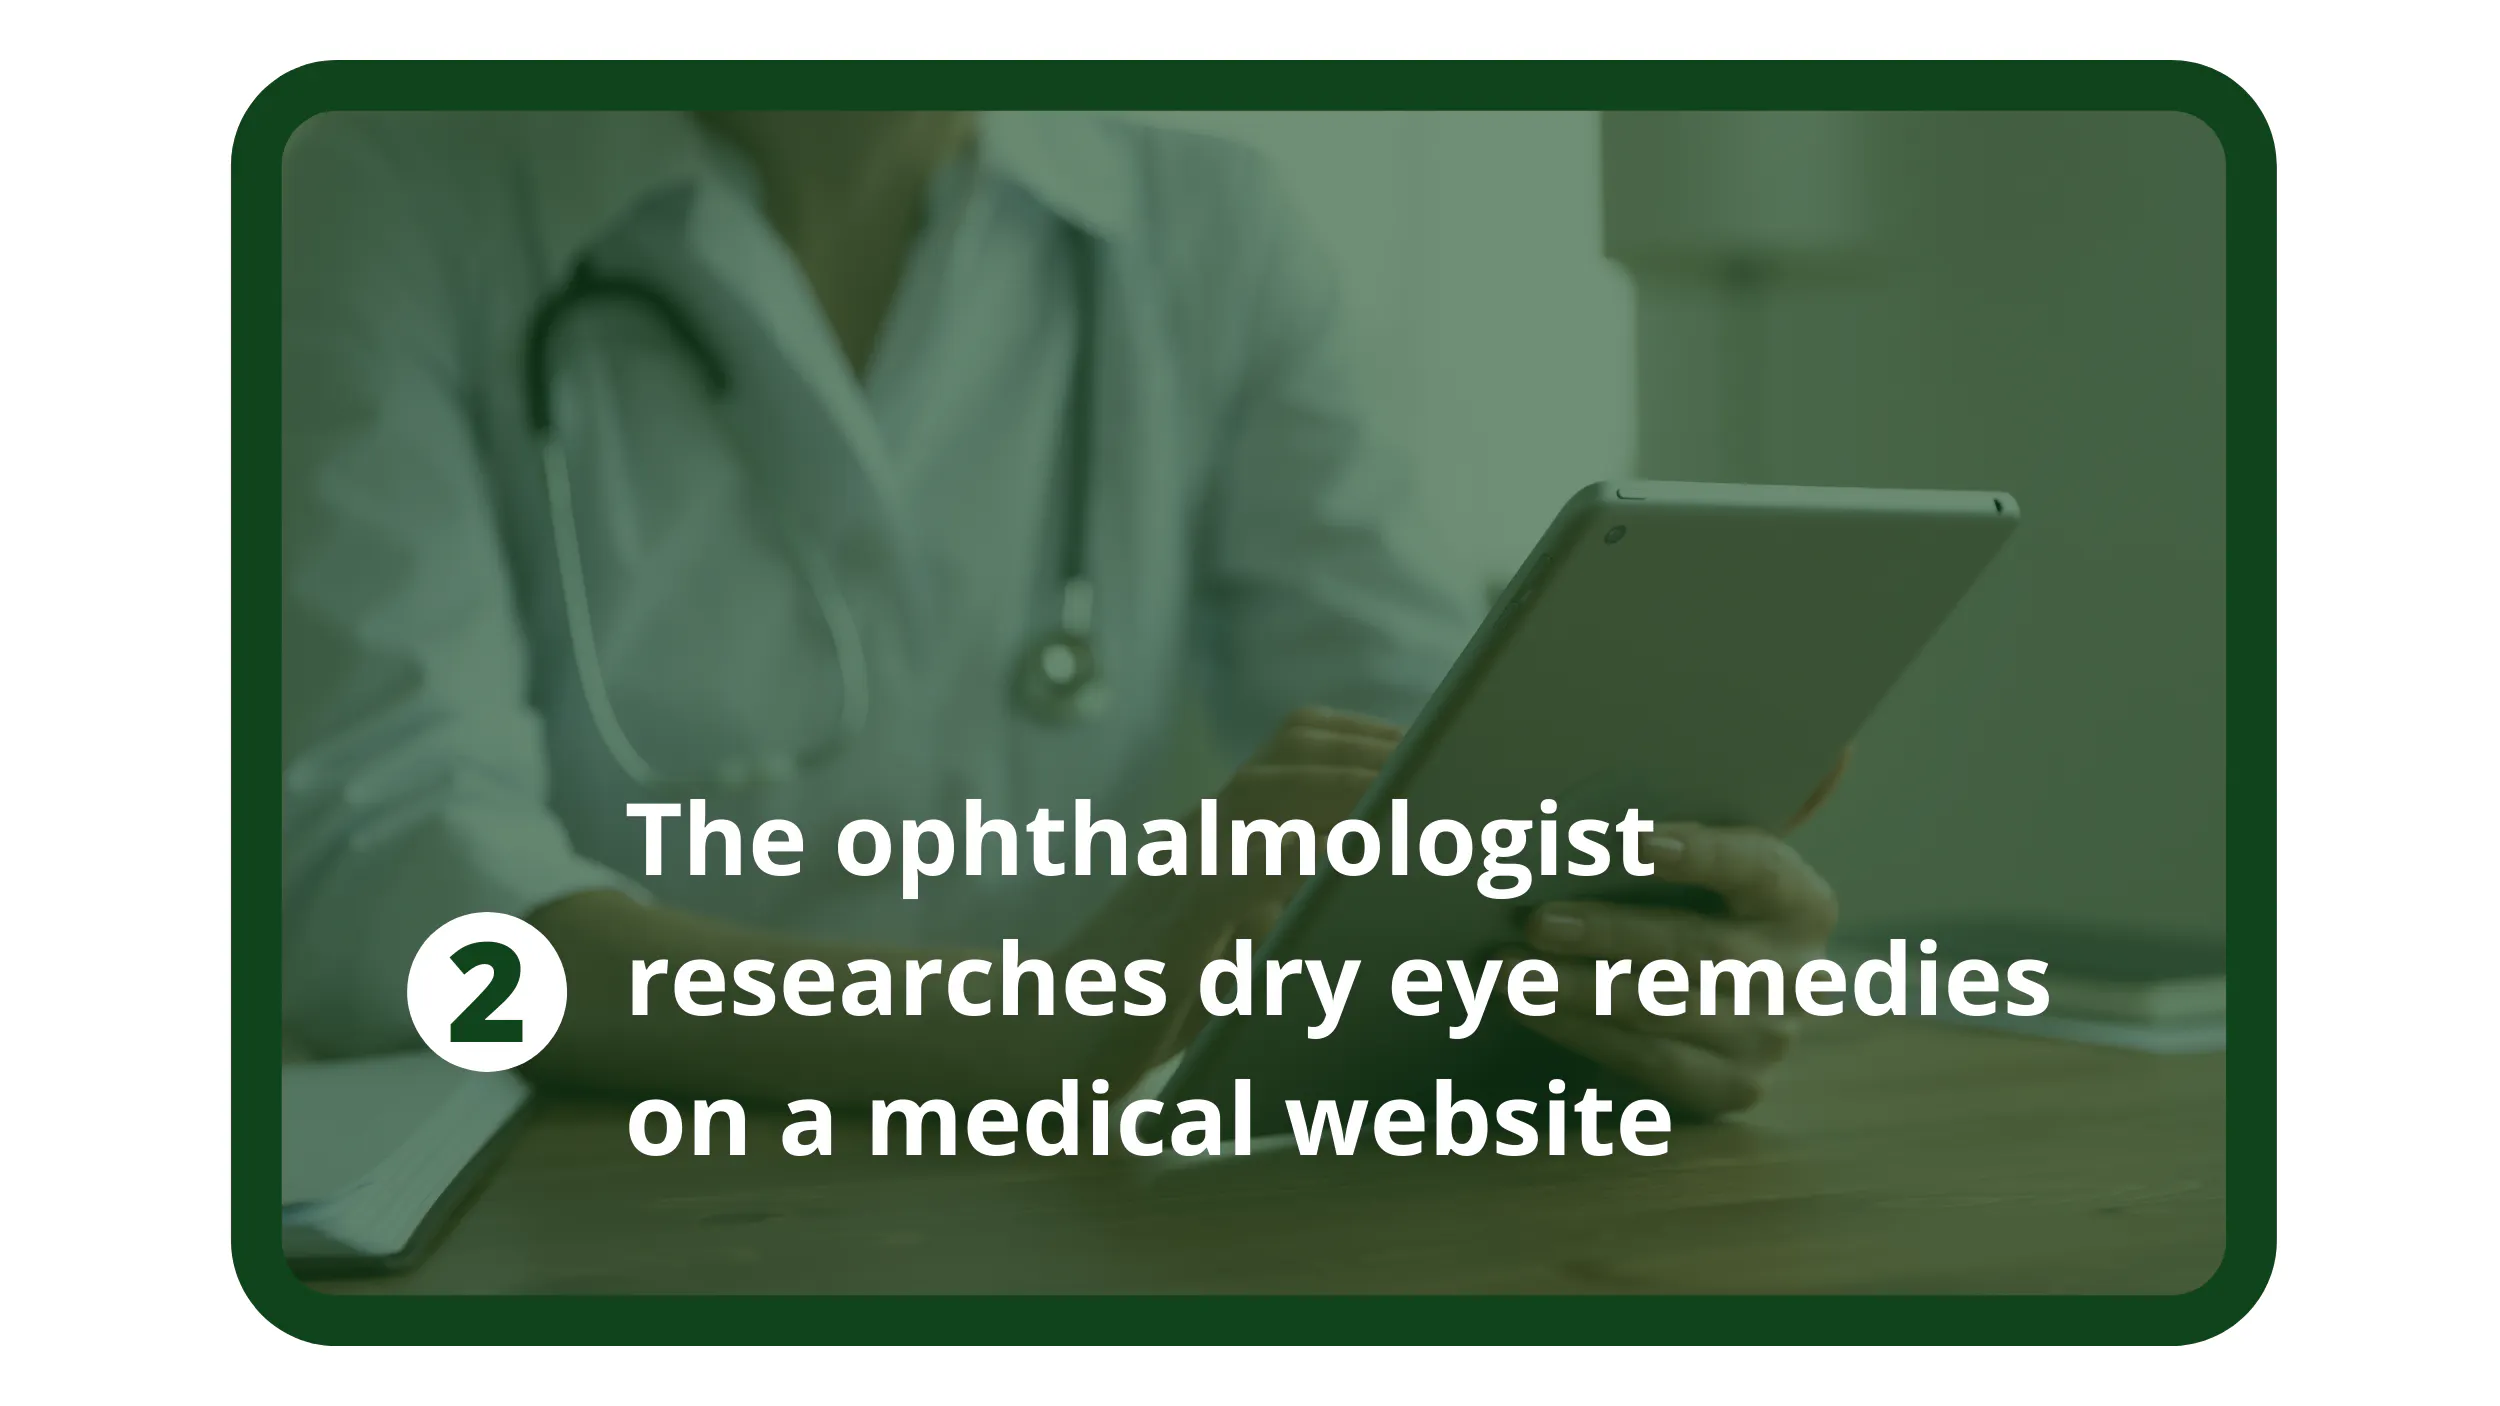 L'oftalmologo fa ricerche sui rimedi per l'occhio secco su un sito web medico